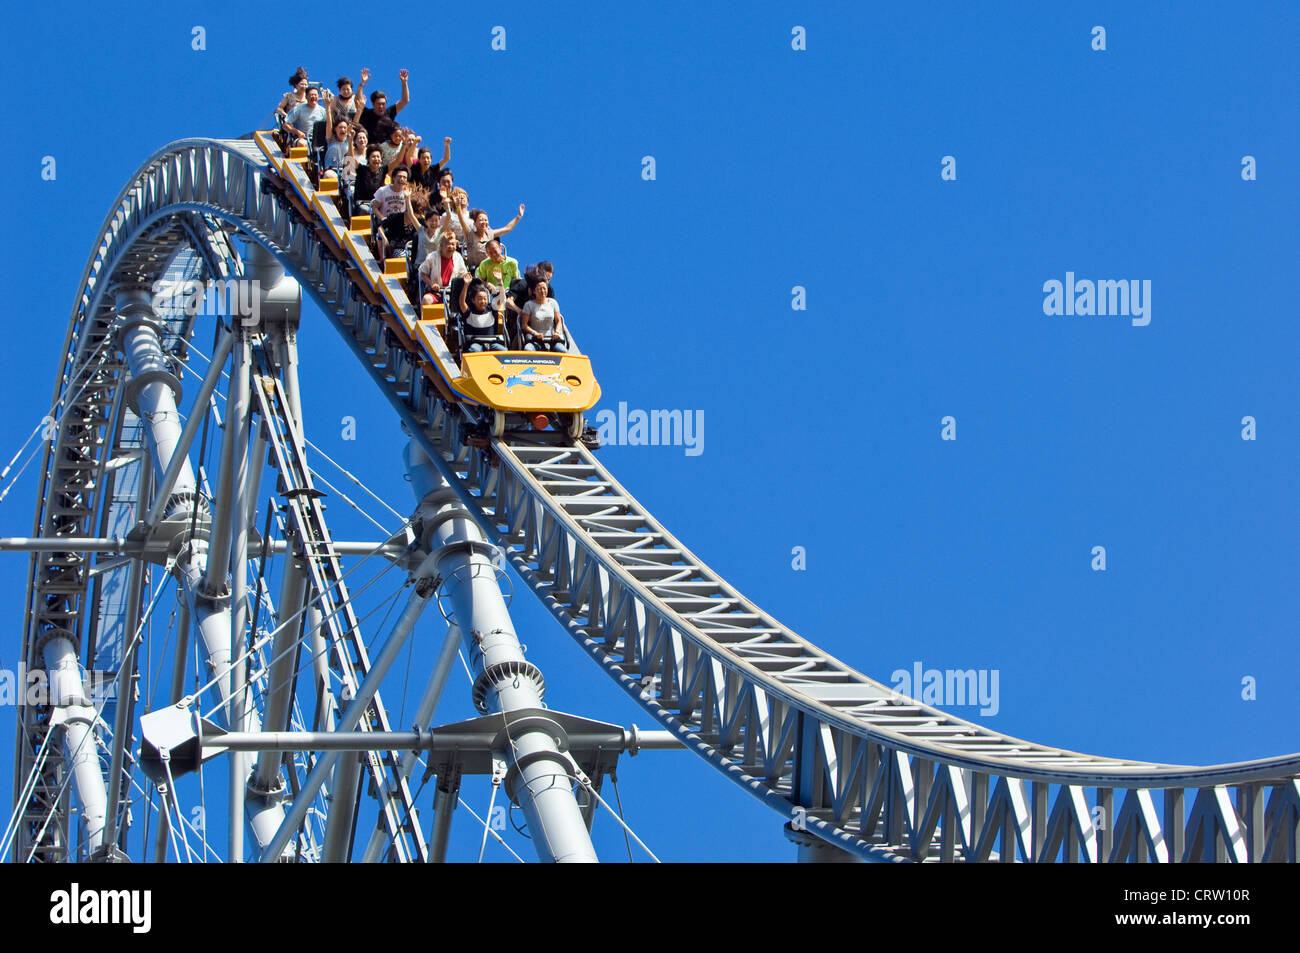 Il Tuono Dolphin roller coaster in Korakuen parco divertimenti, Tokyo, Giappone. Foto Stock